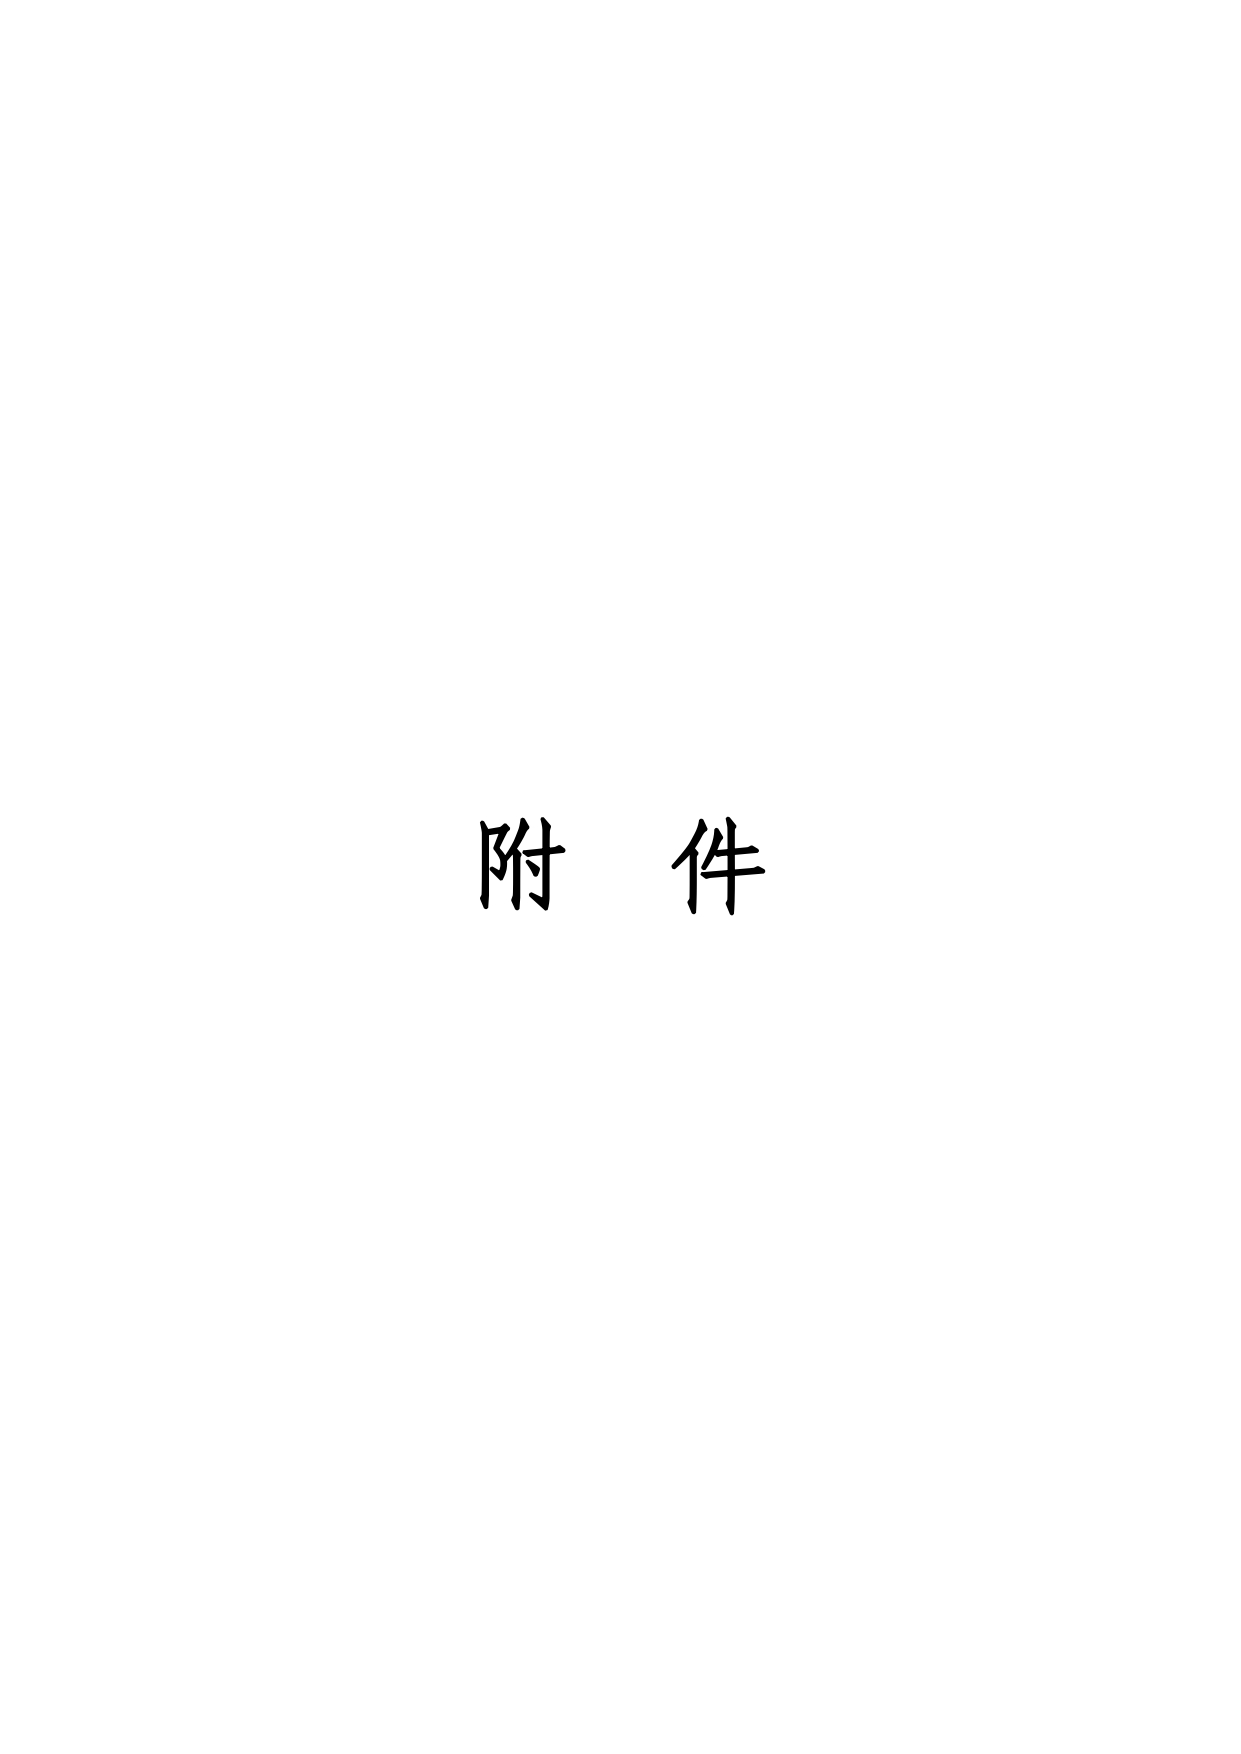 01-中果广场大厦项目水土保持报告表-打印_page-0008.jpg